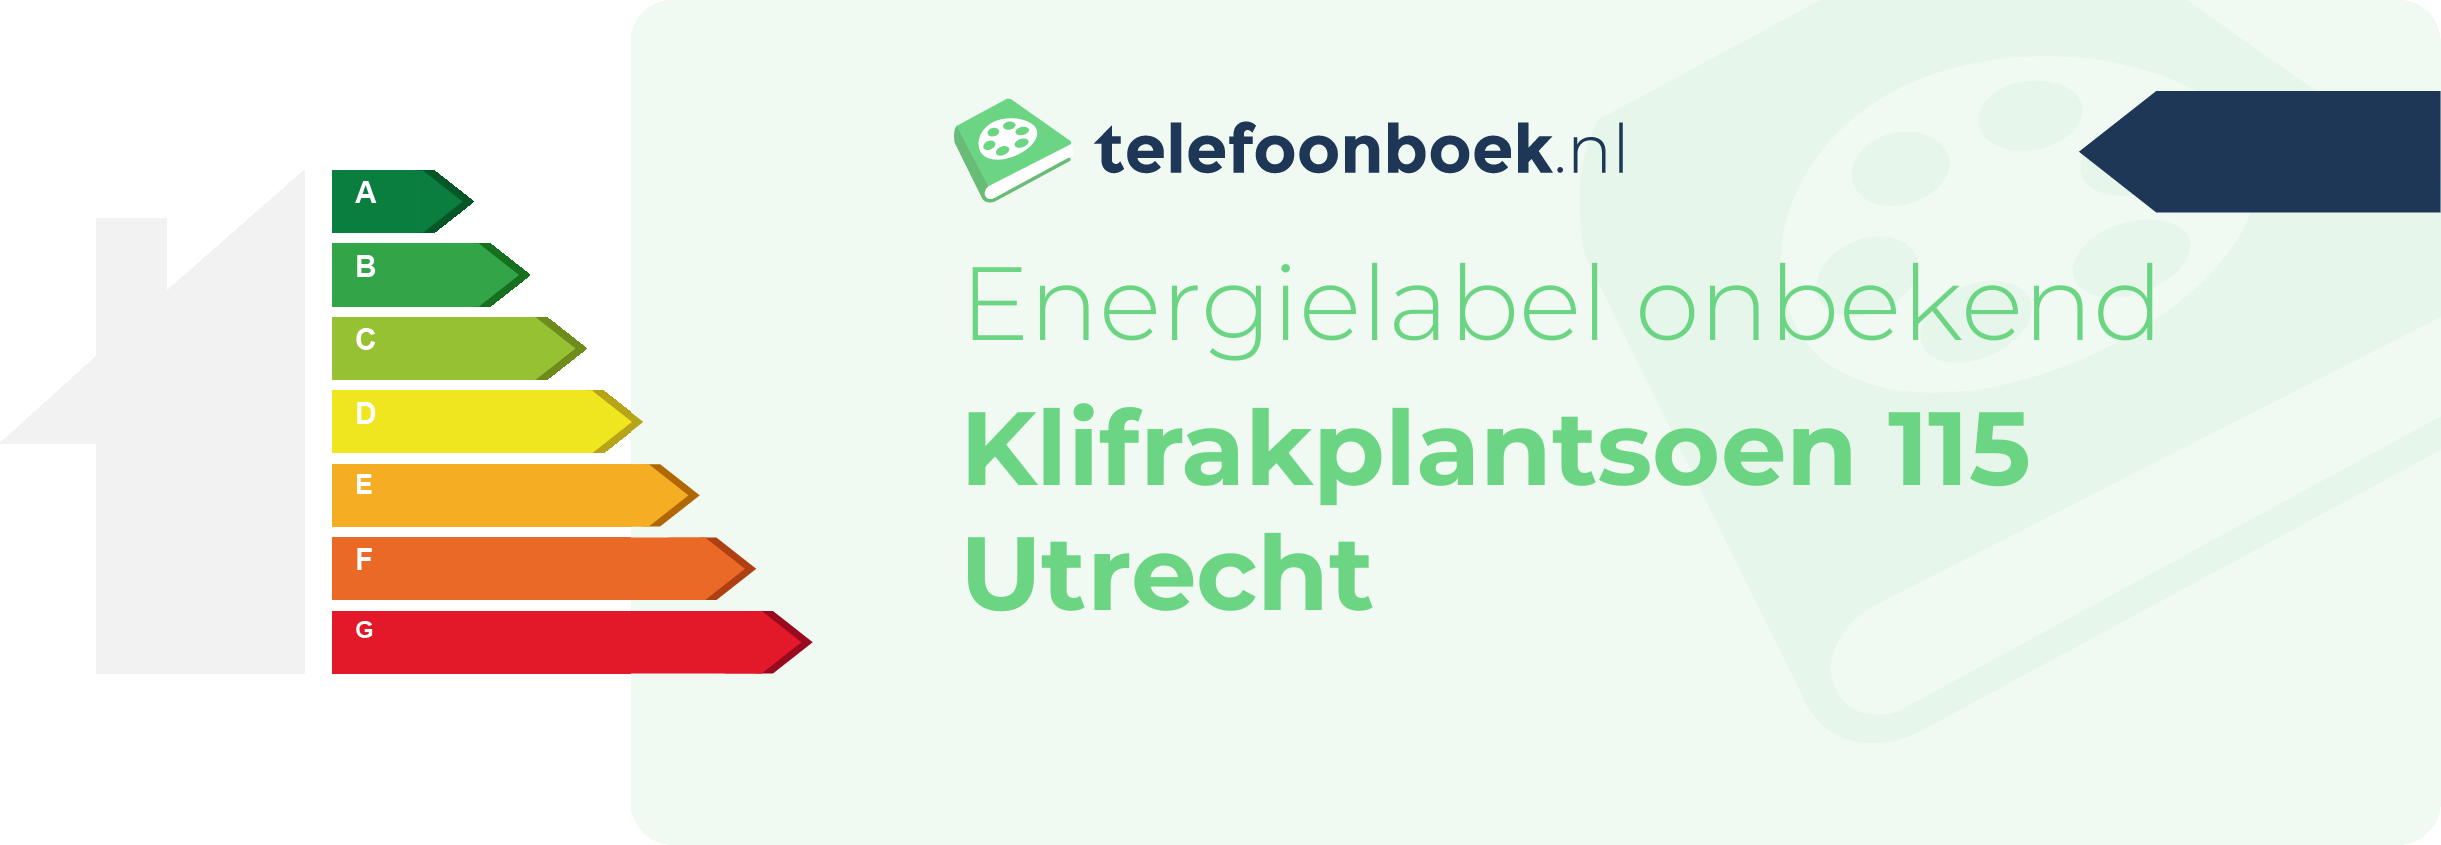 Energielabel Klifrakplantsoen 115 Utrecht